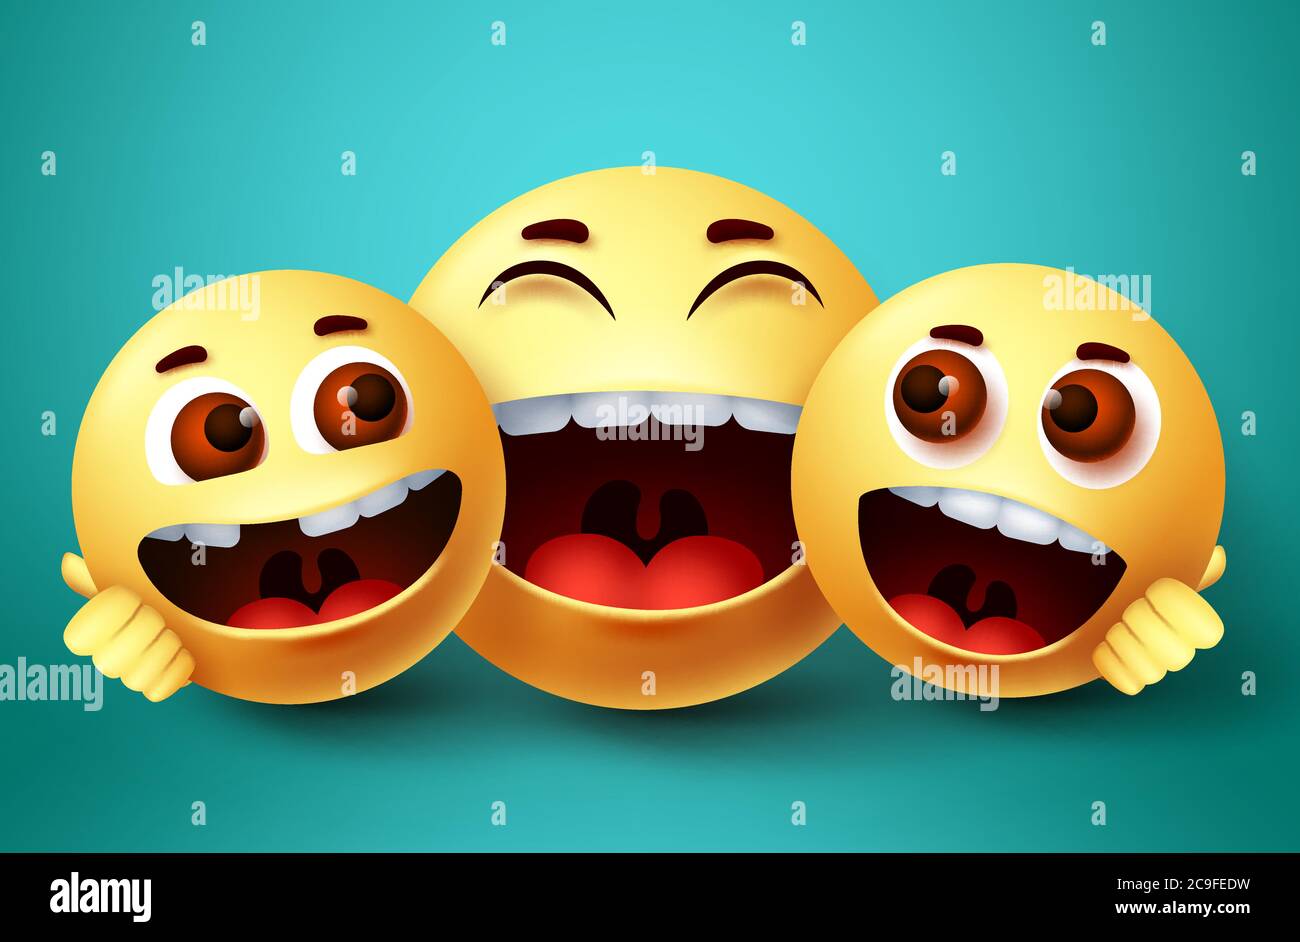 Smiley emoji glücklich Familie Zeichen Vektor-Design. Emoji Smiley von Eltern und Kindern glücklich Bindung mit Umarmungen und liebevolle Geste in grünem Hintergrund. Stock Vektor